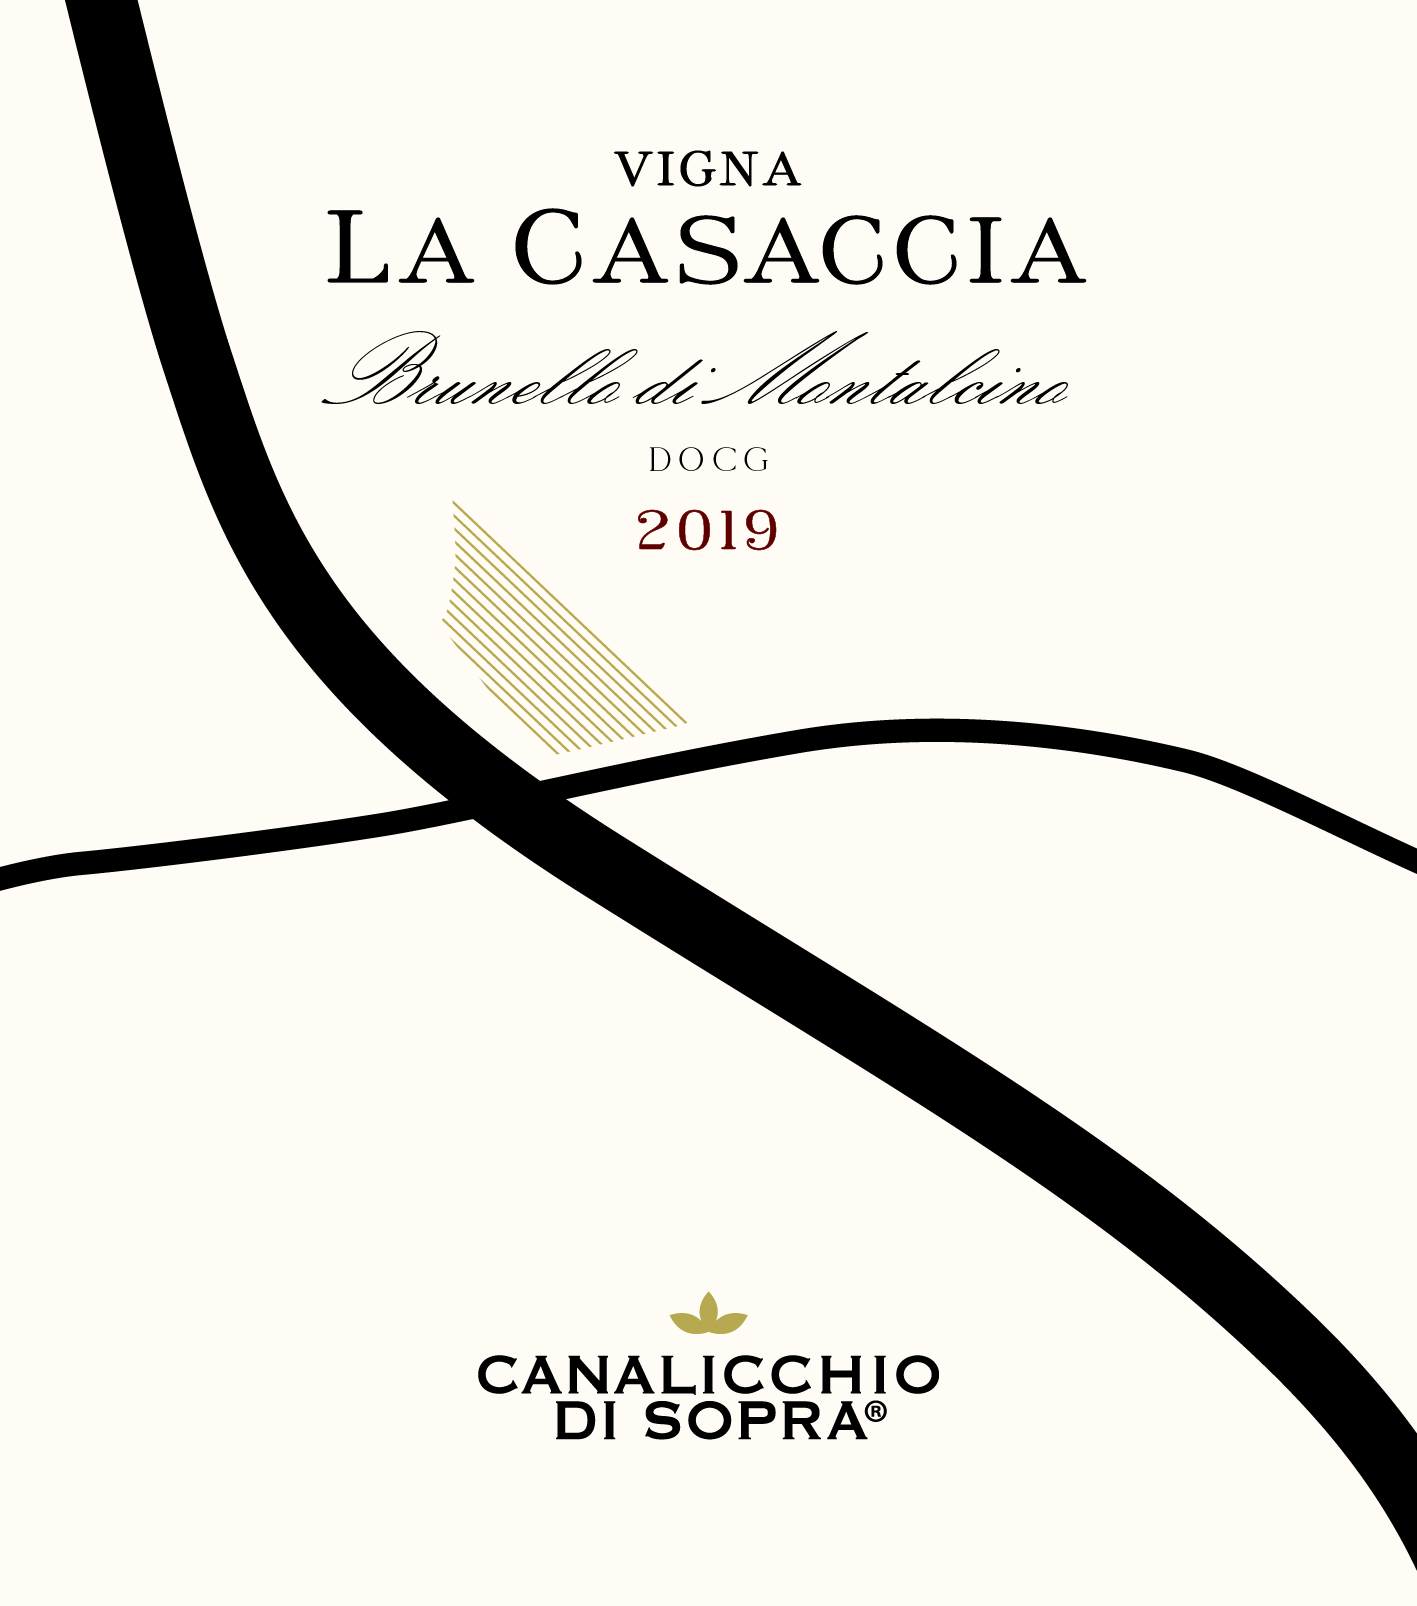 2019 Canalicchio di Sopra Brunello di Montalcino La Casaccia - click image for full description